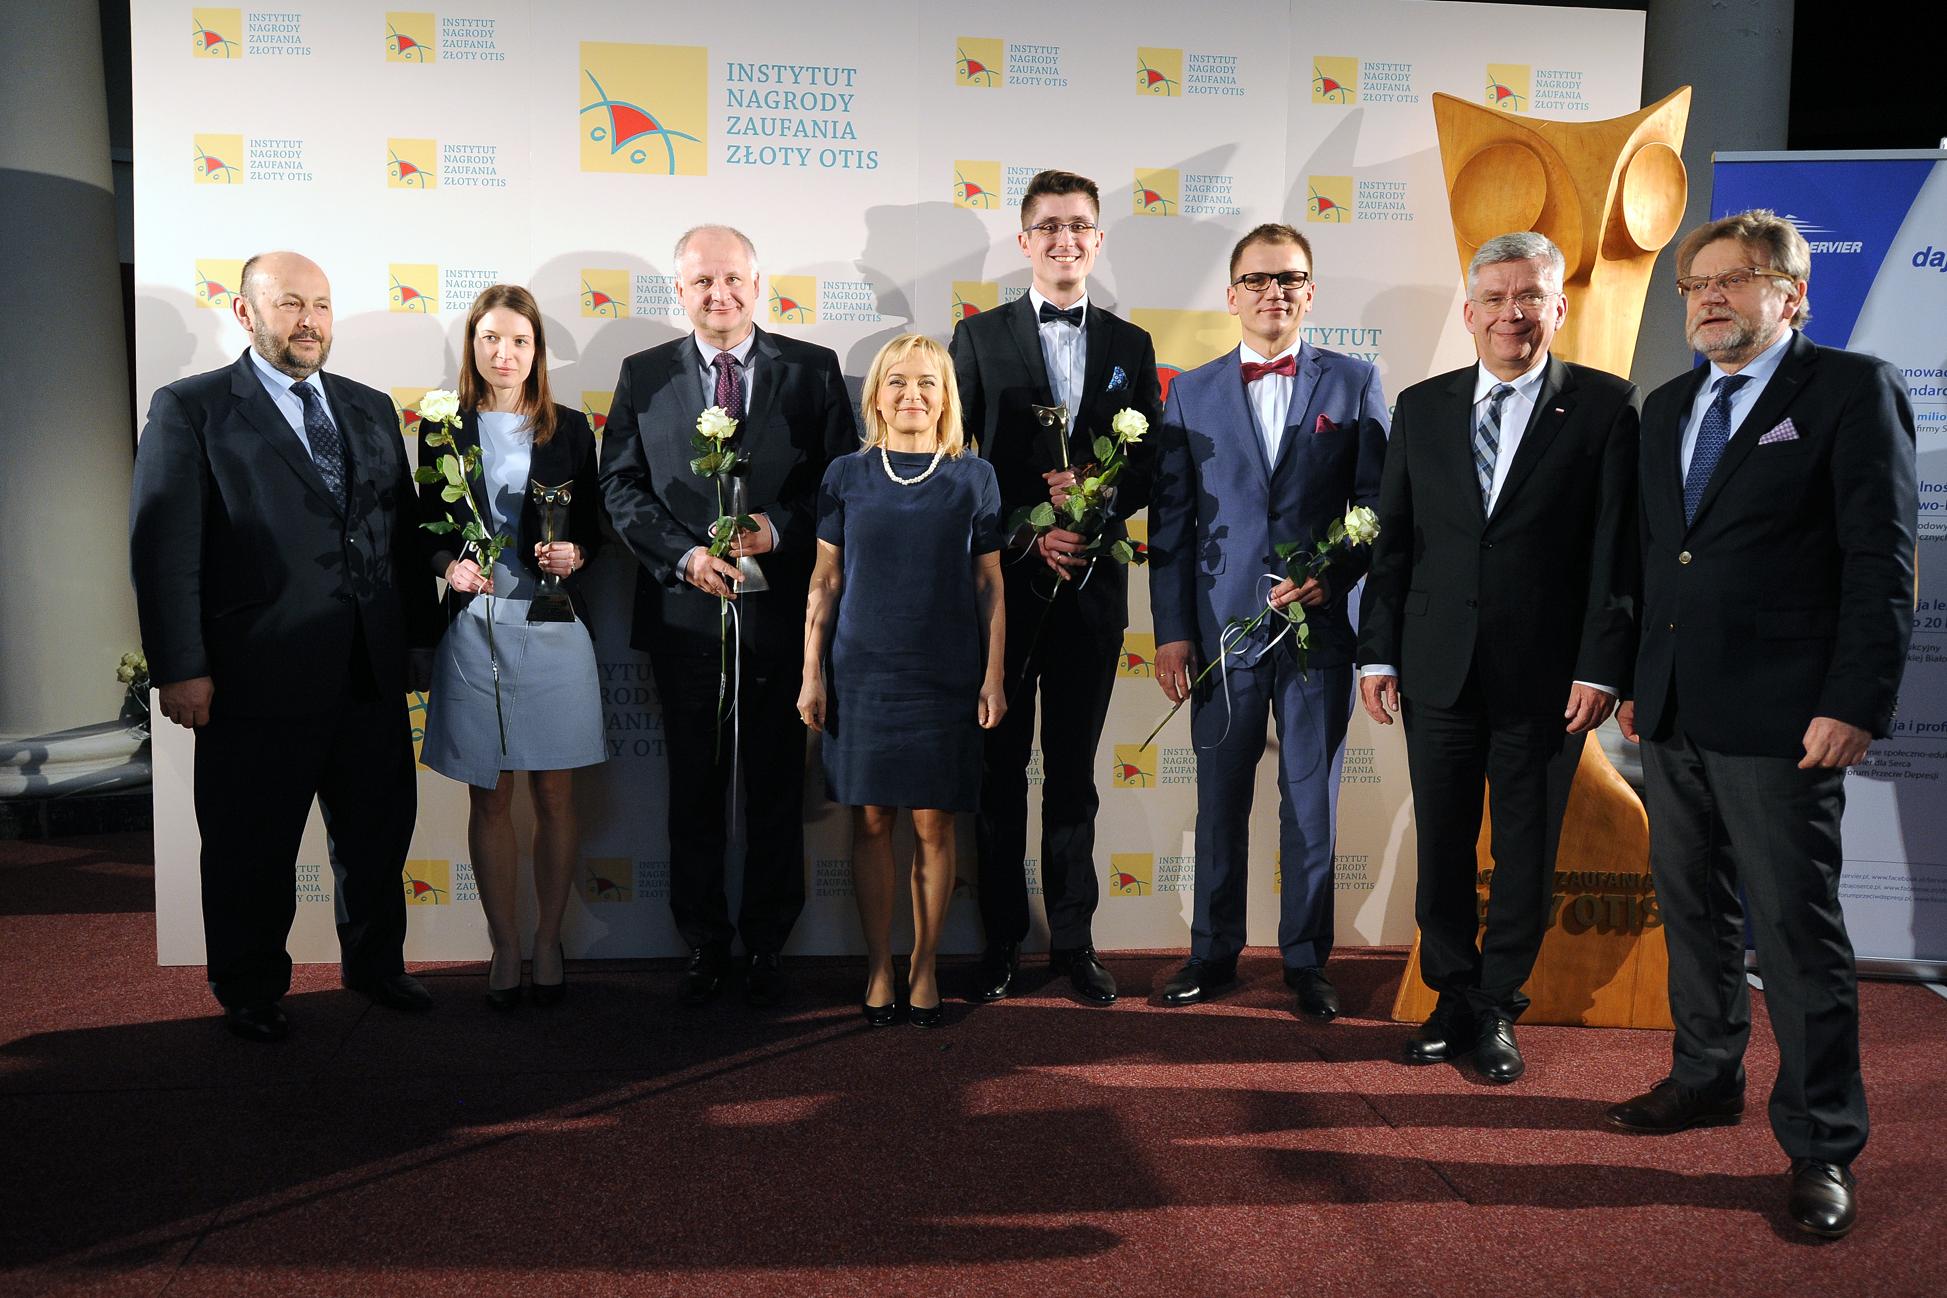 Nagroda Złoty Otis 2017 dla Polskiego Stowarzyszenia Diabetyków i Prezes Anny Śliwińskiej